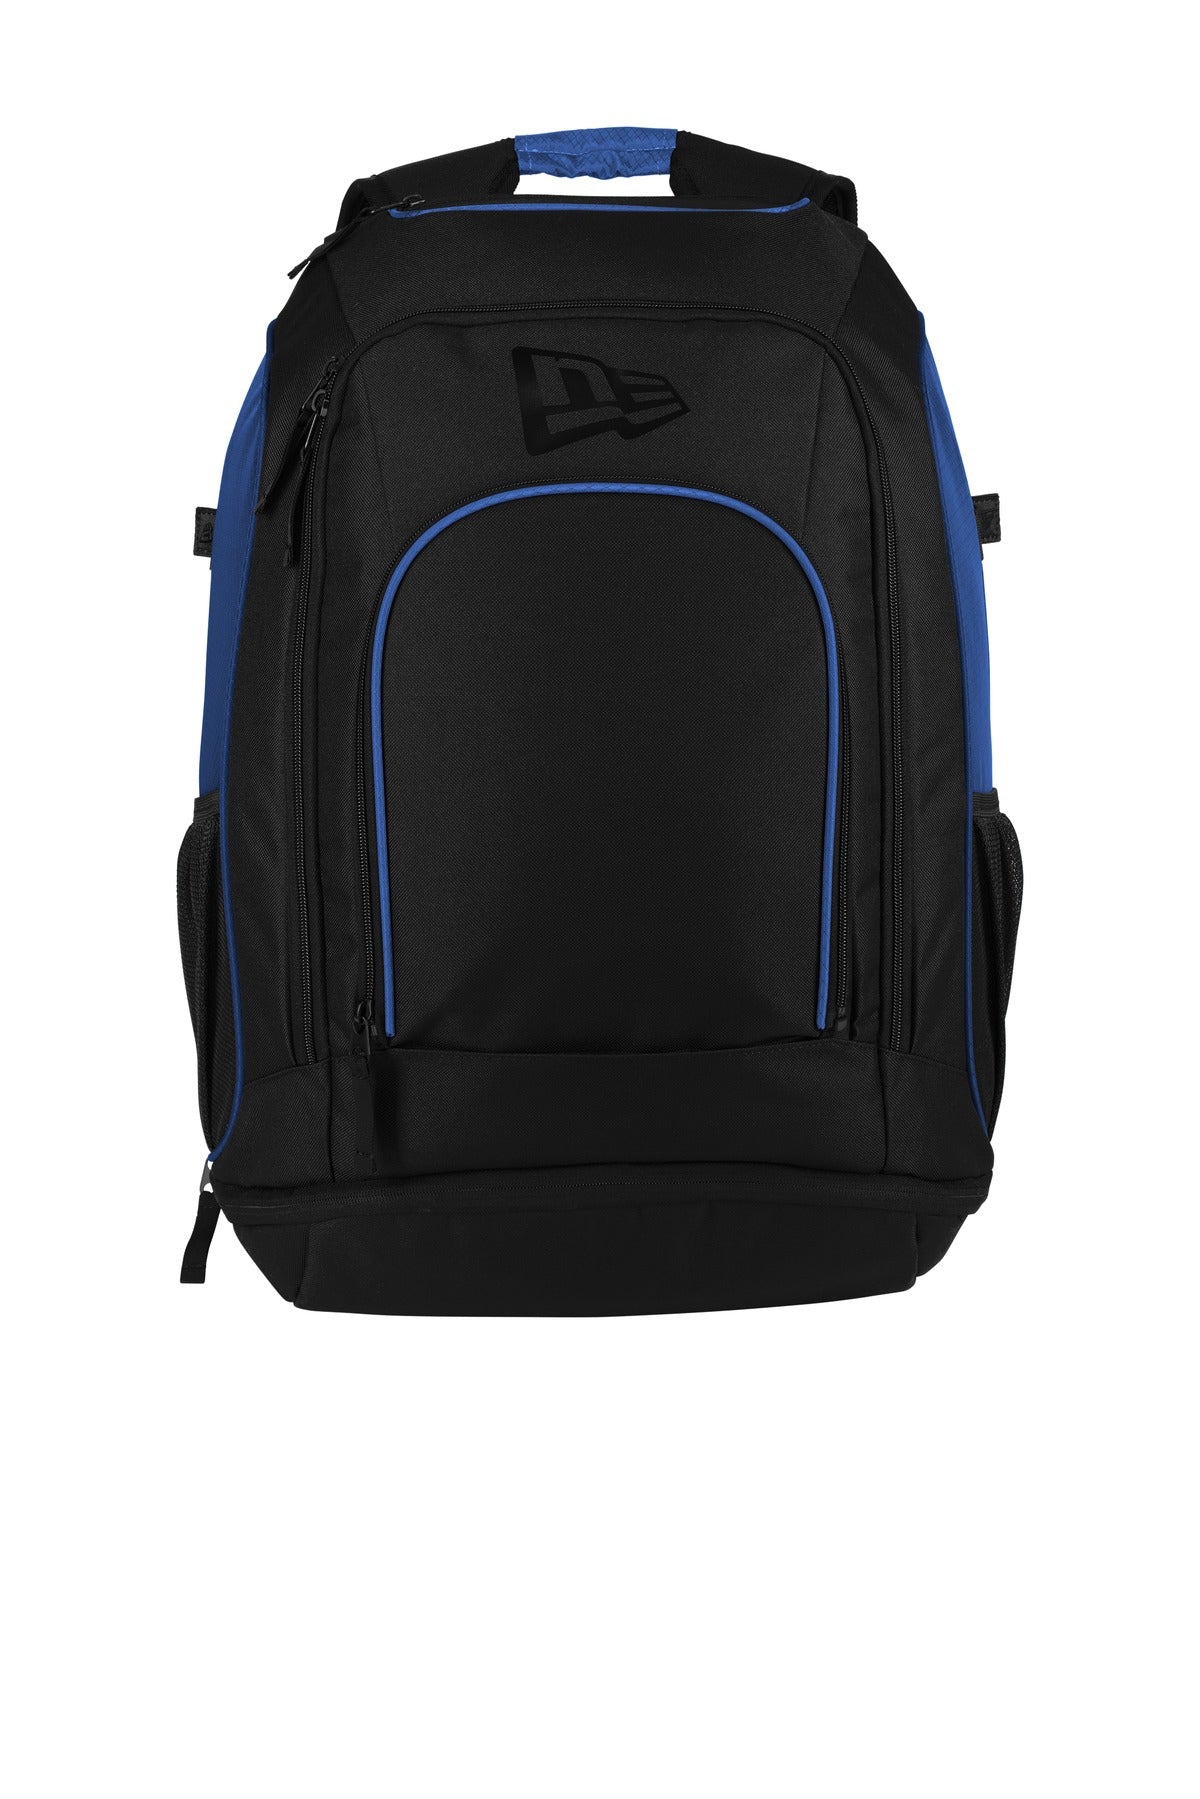 New Era ® Shutout Backpack NEB300 - DFW Impression